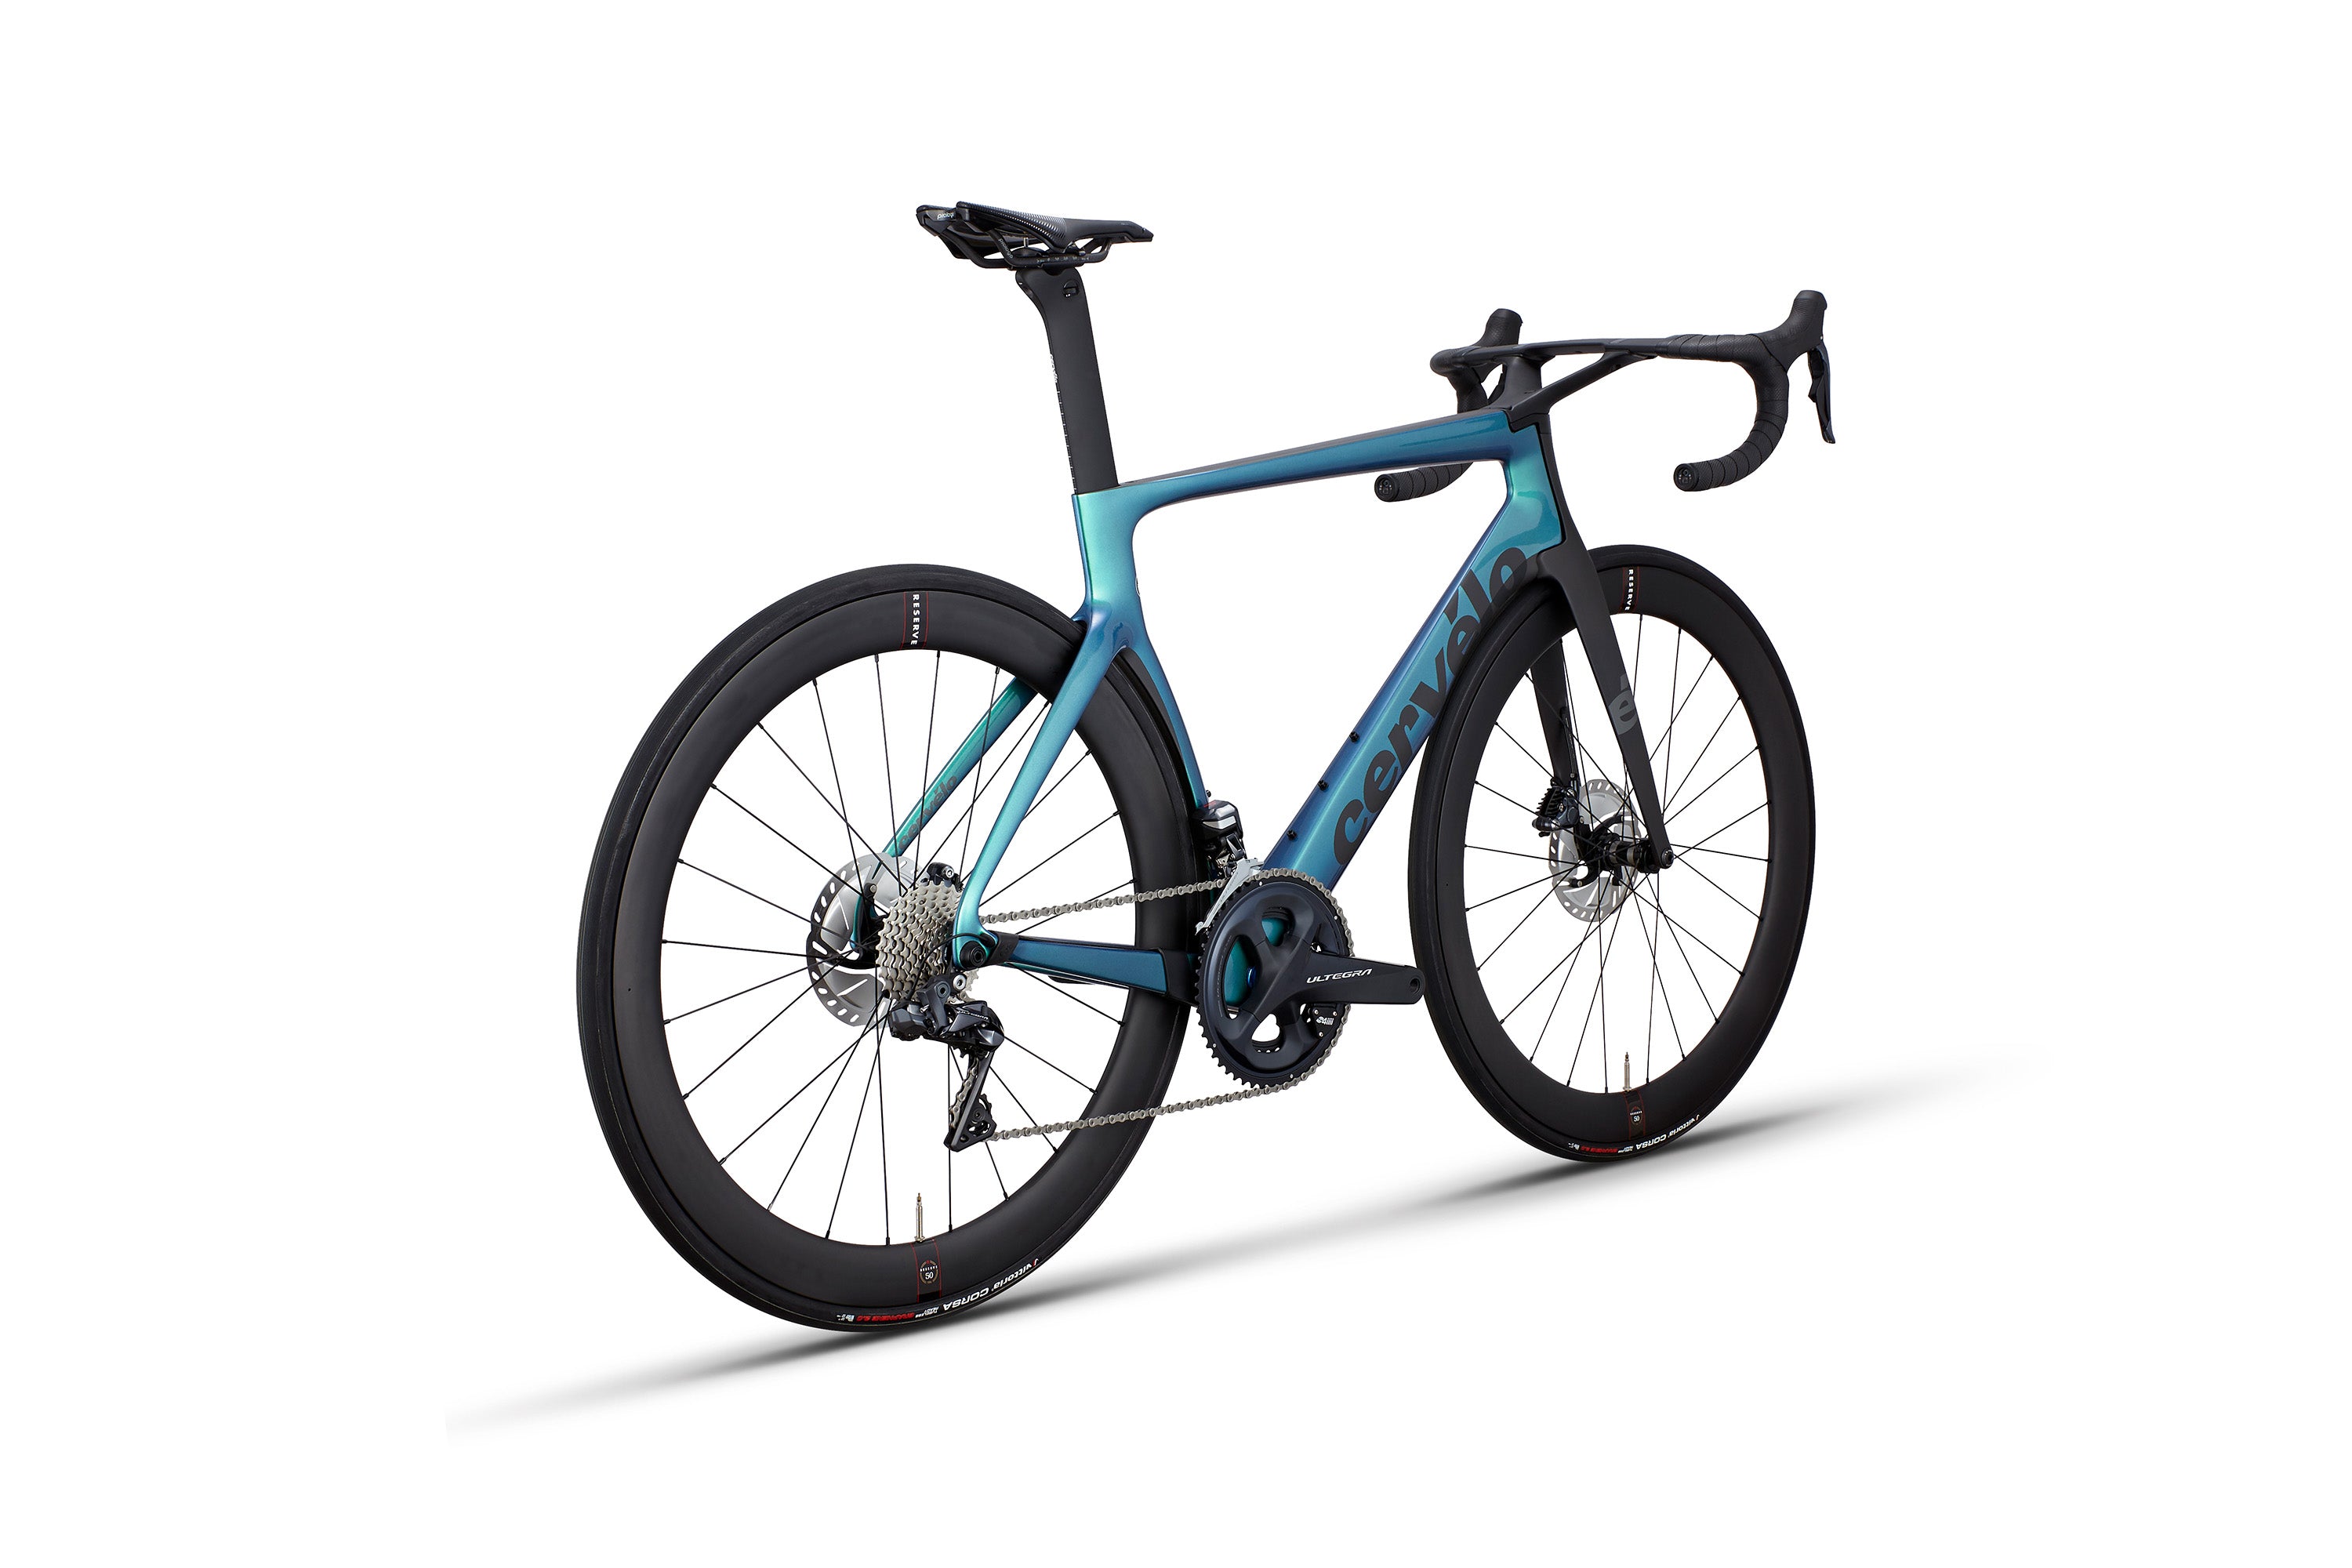 単体販売中古美品 限定 Cervelo 2021 S5 Disc Team Jumbo-Visma サイズ 51 ロードバイク 完成車 新品同様 自転車 SRAM RED 500mm～